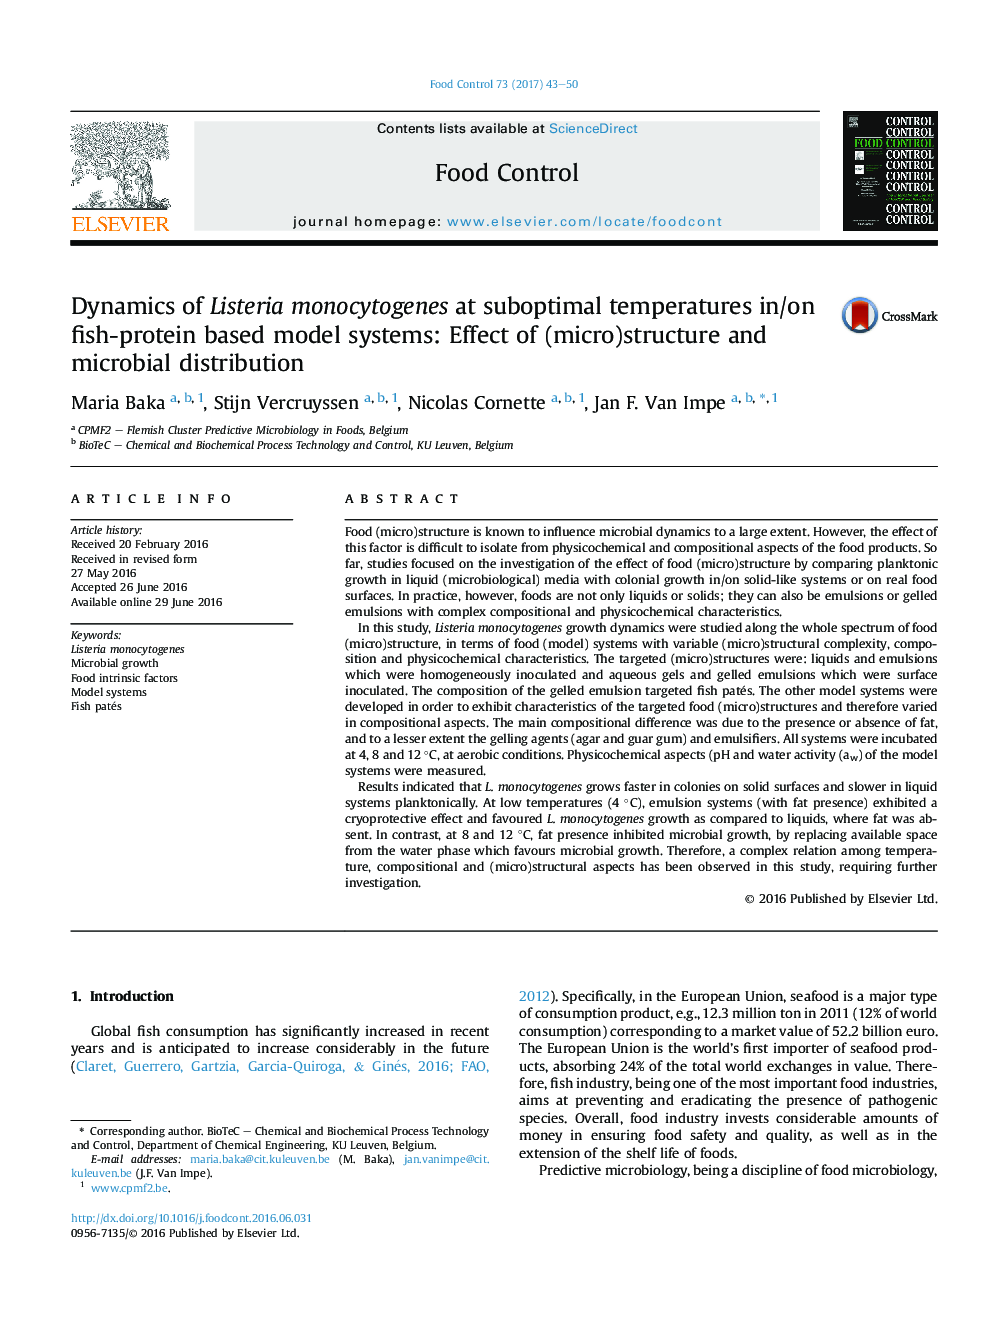 دینامیک لیستریا مونوسیتوژنز در دمای کمتر از حد مطلوب در/بر روی سیستم های مبتنی بر مدل پروتئین ماهی: اثر (ریز) ساختار و توزیع میکروبی